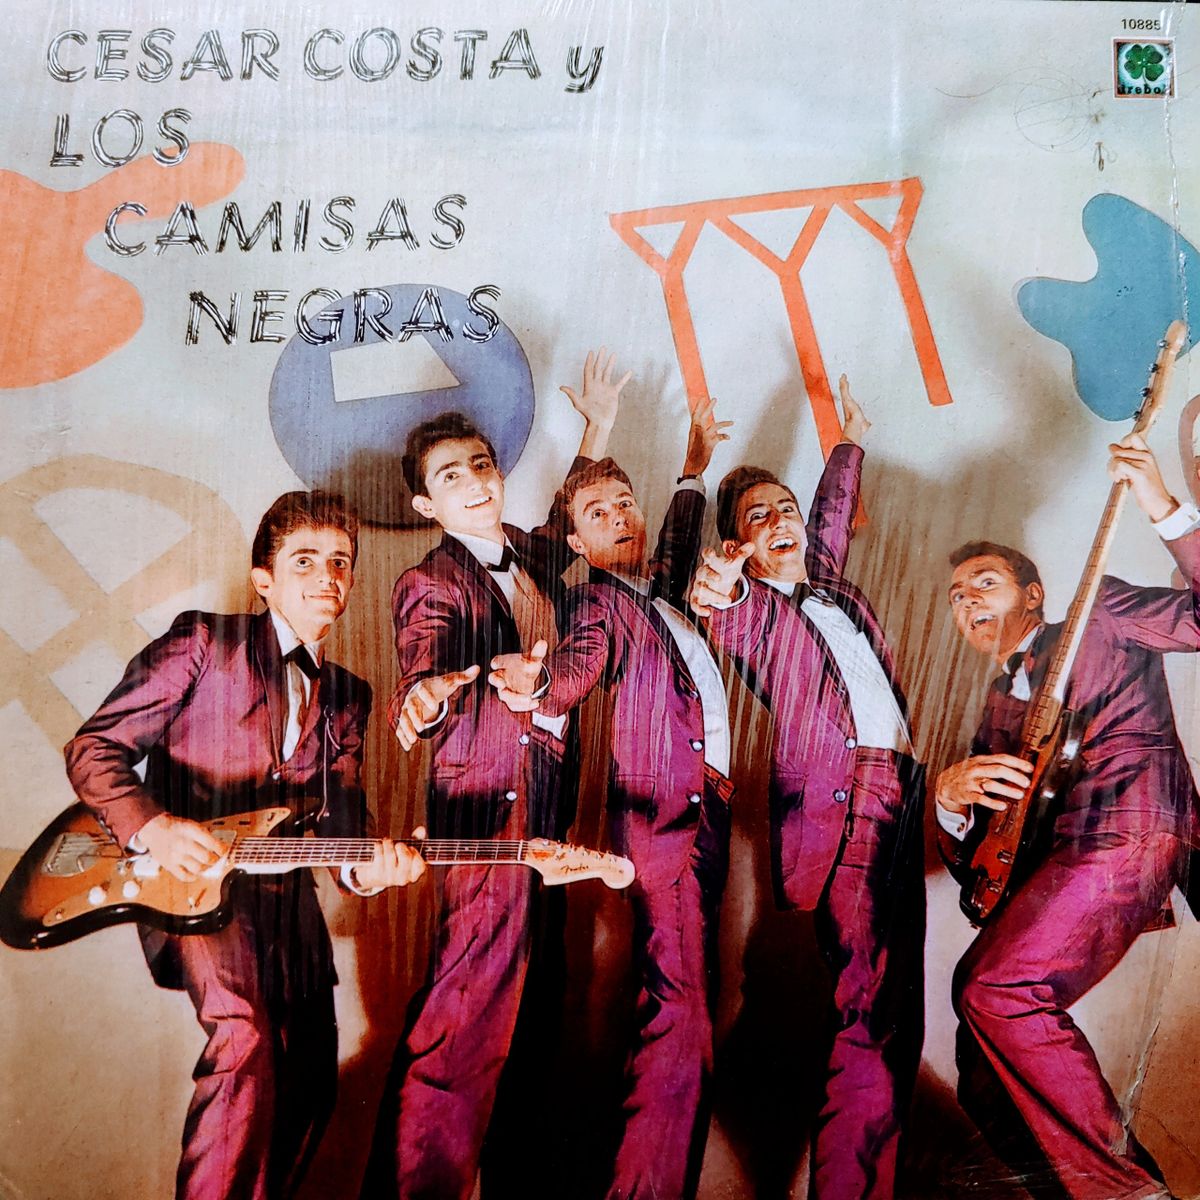 Cesar Costa y Los Camisas Negras